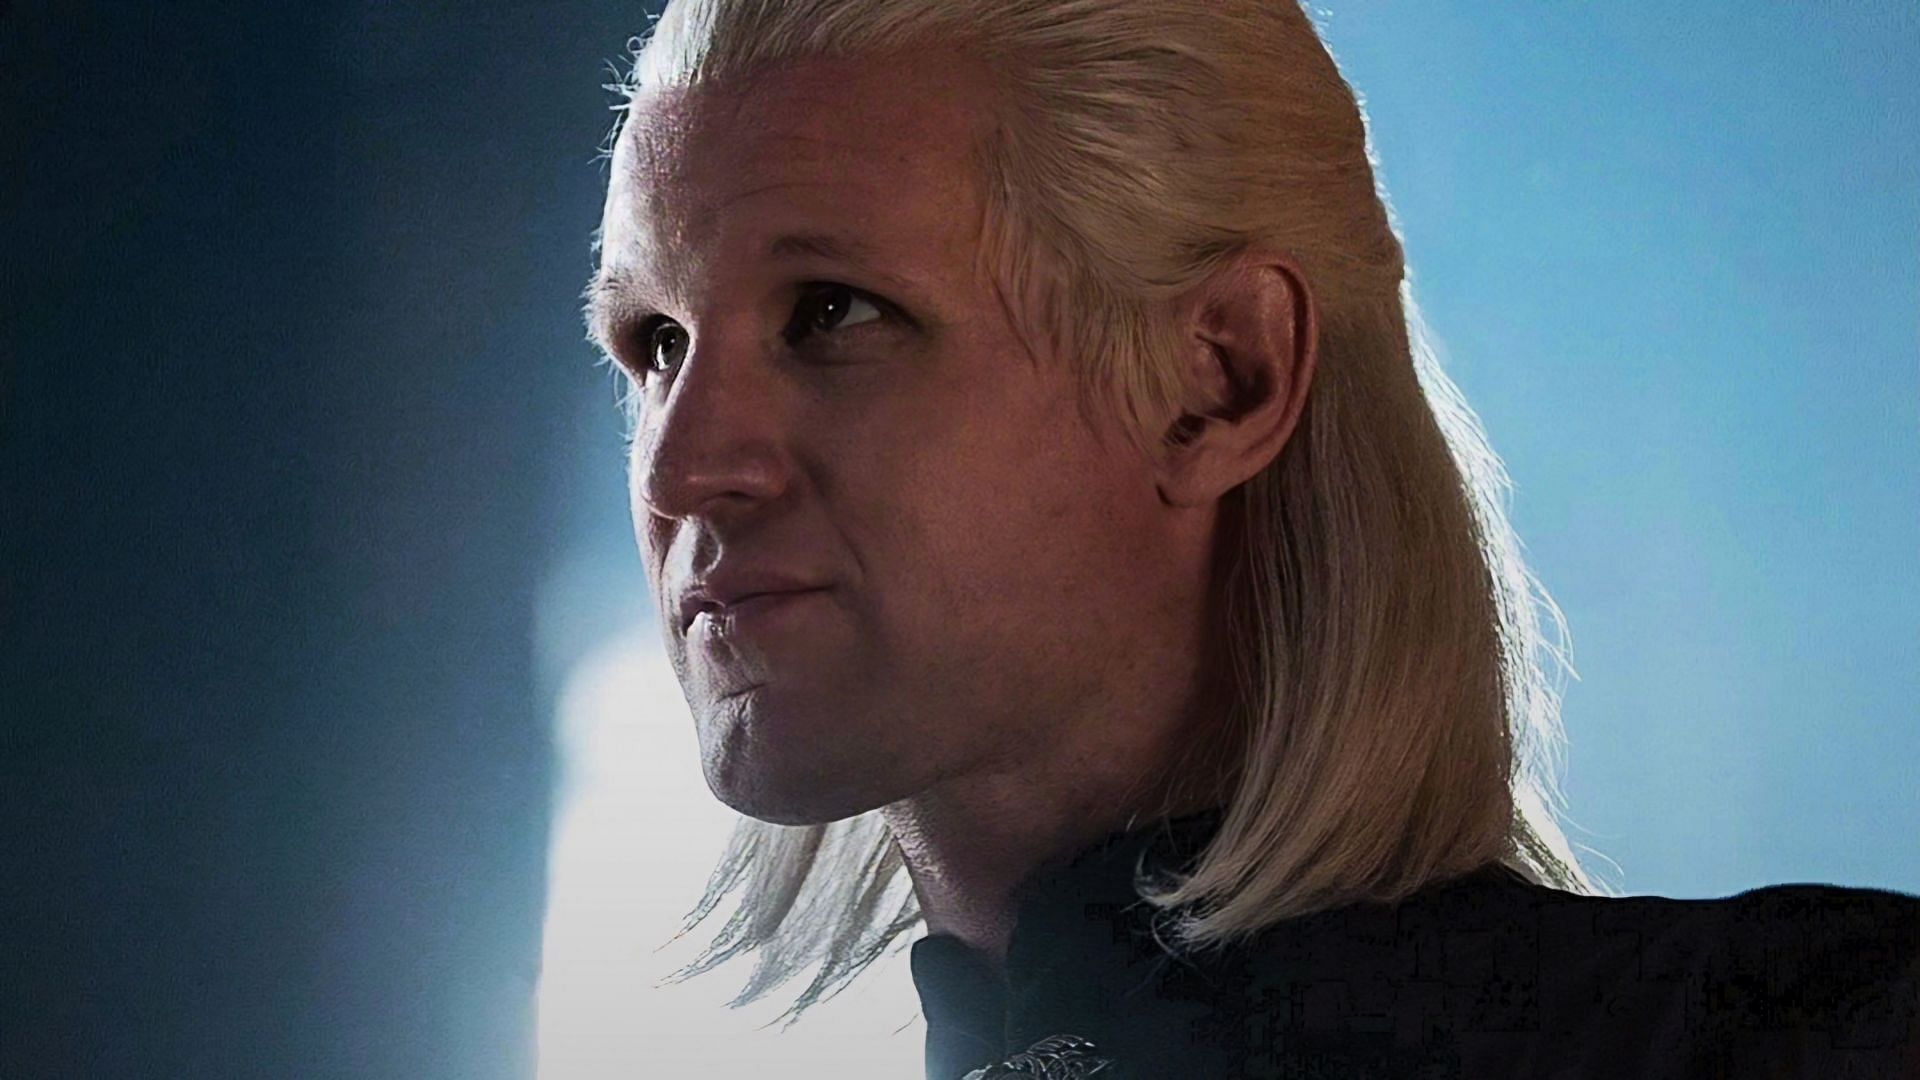 Matt Smith as Daemon Targaryen in the show (via HBO)